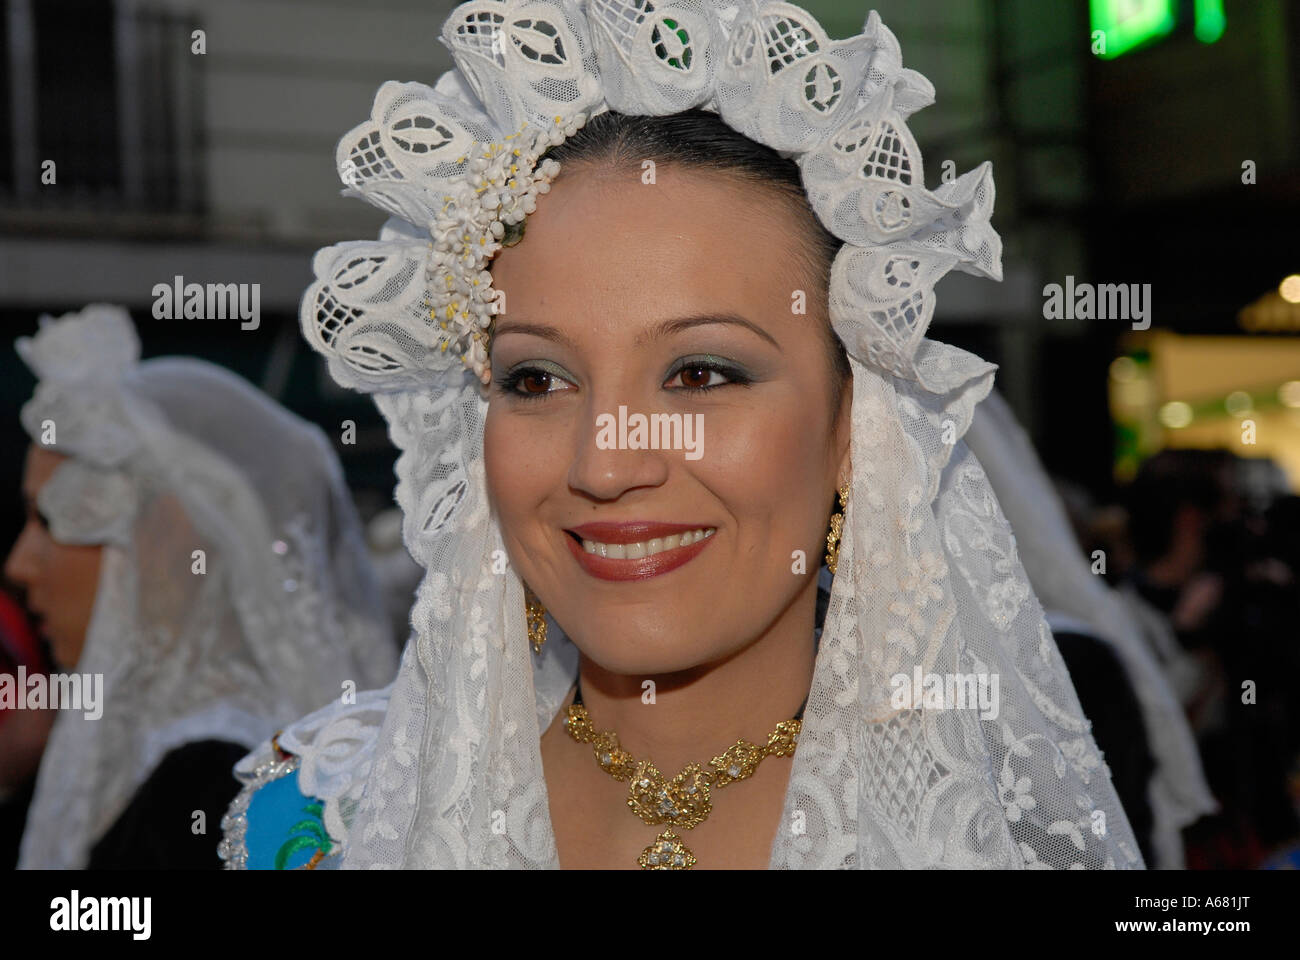 Junge Fallera Frau trägt traditionelle weiße Spitze Kopfbedeckung während Las Fallas oder Fellas Festival in der Stadt Valencia Spanien Stockfoto